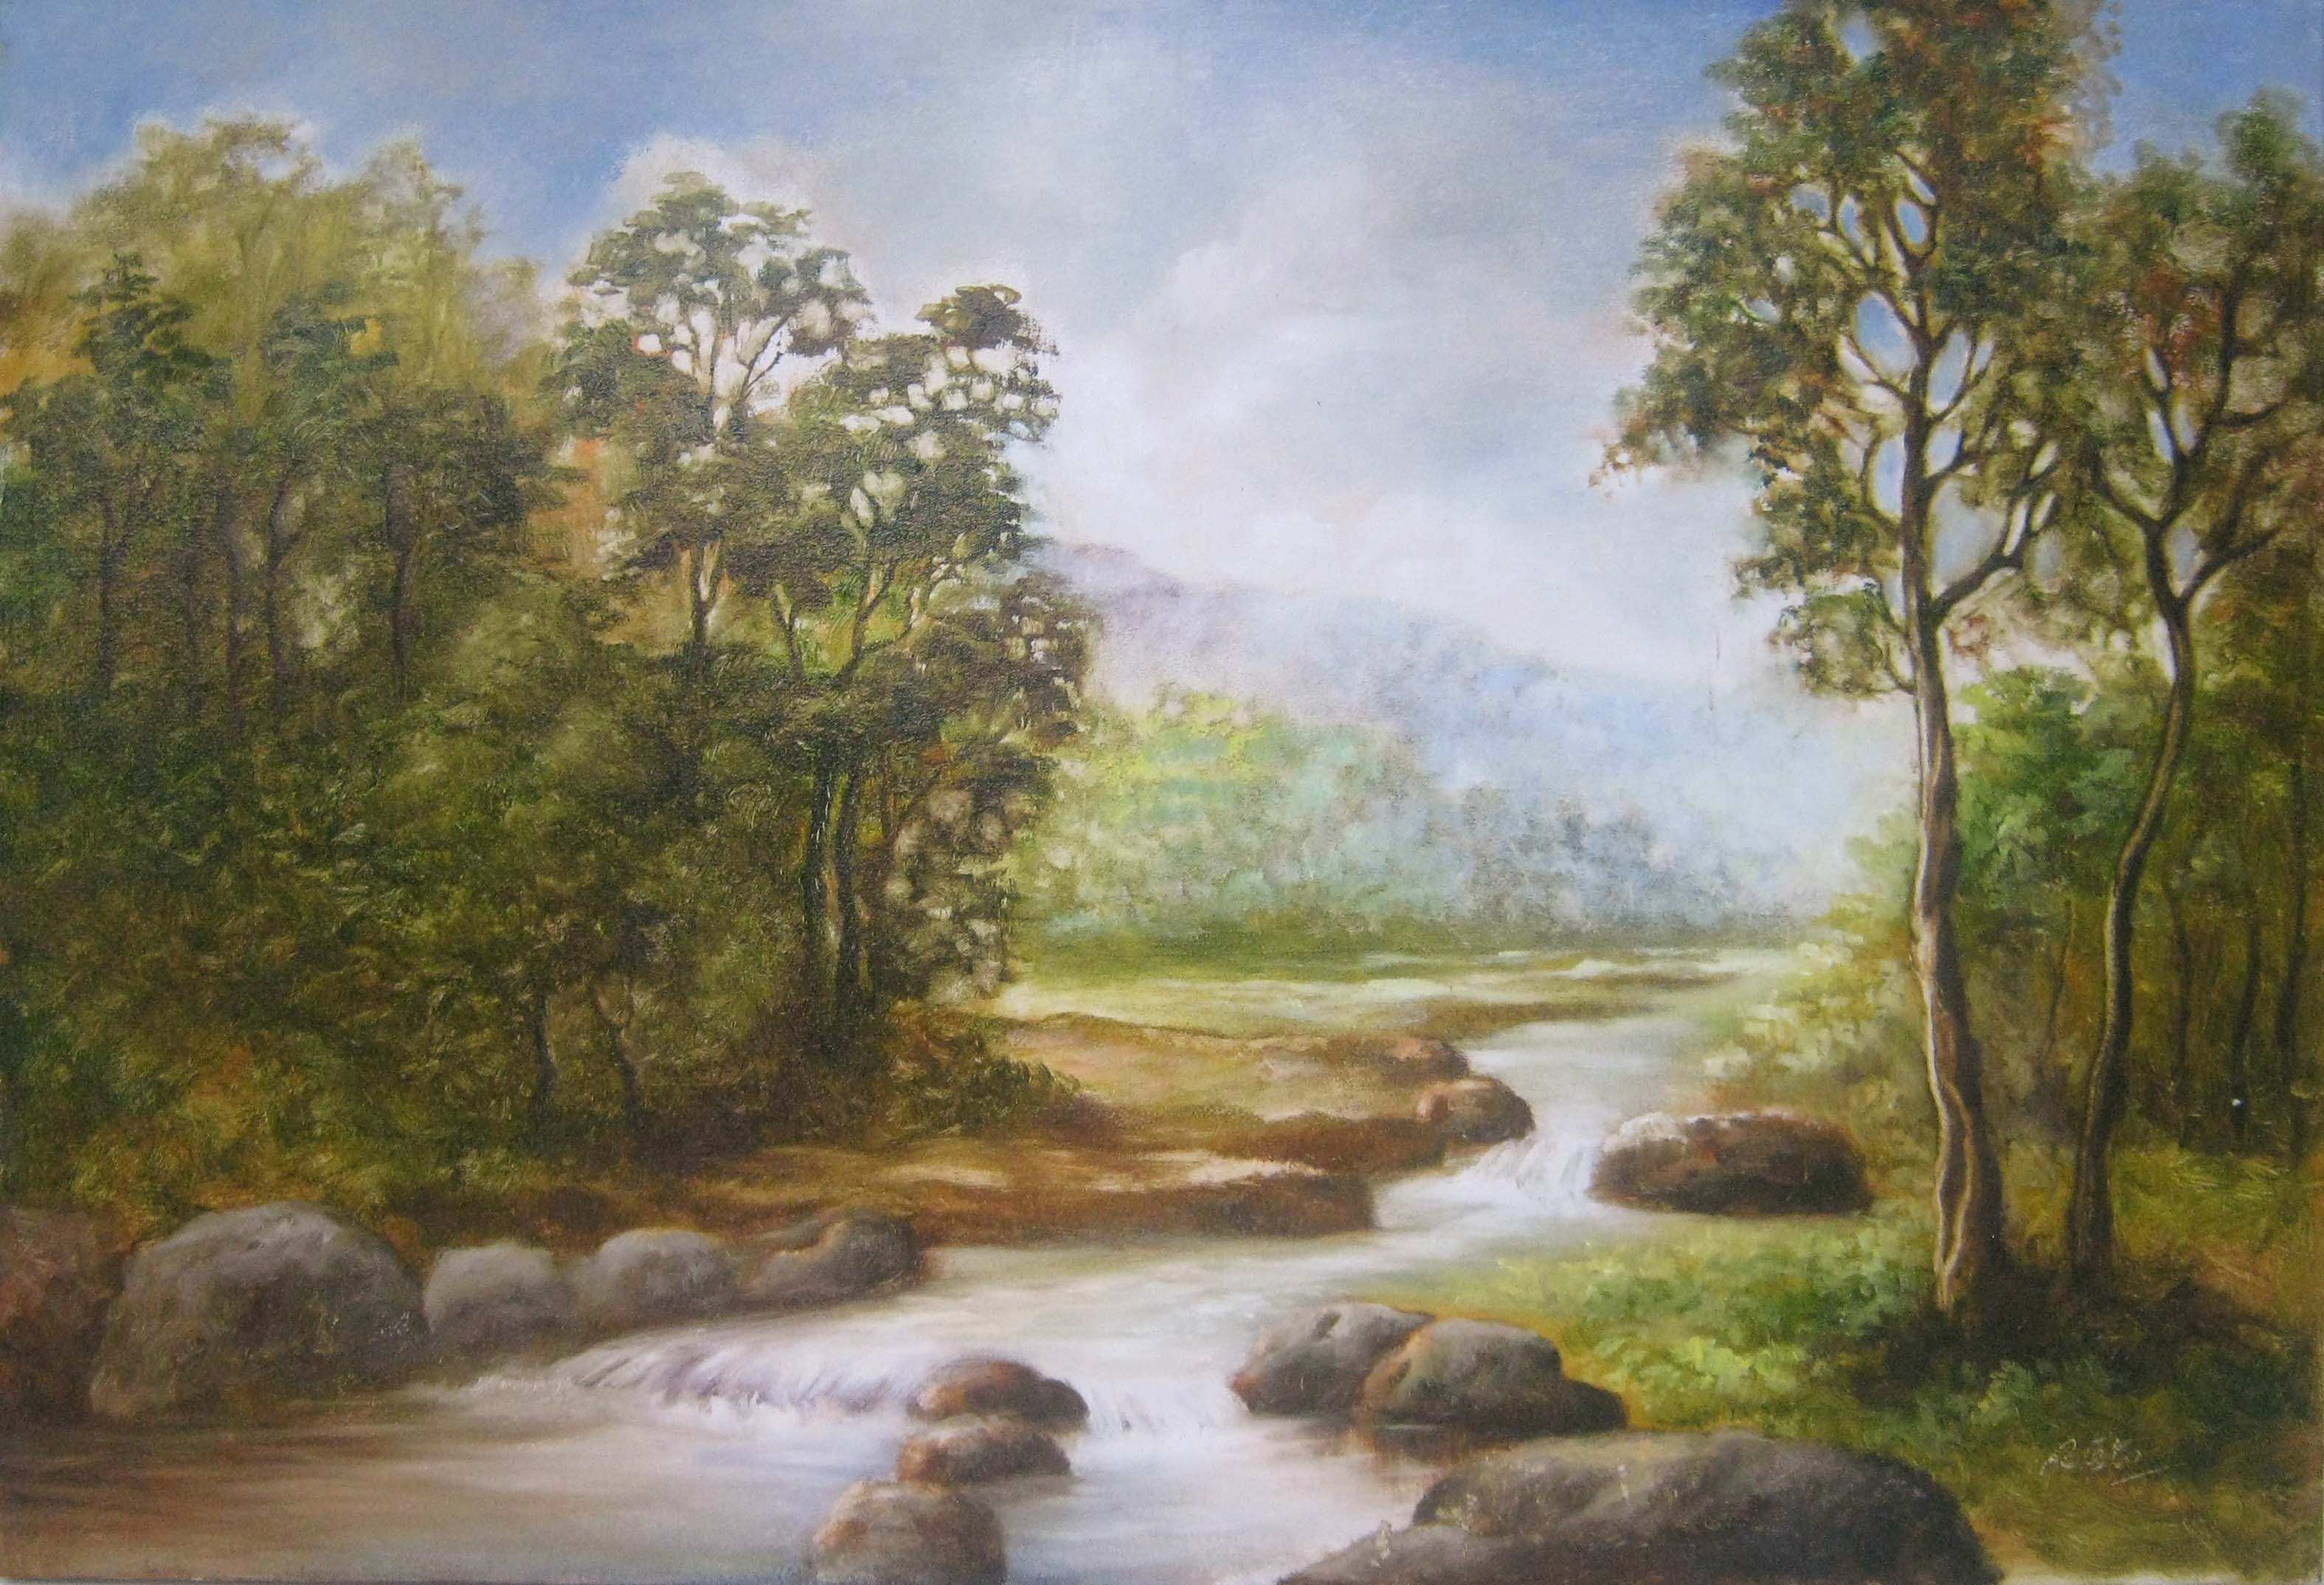 wallpaper pemandangan indah,natural landscape,painting,nature,bank,river